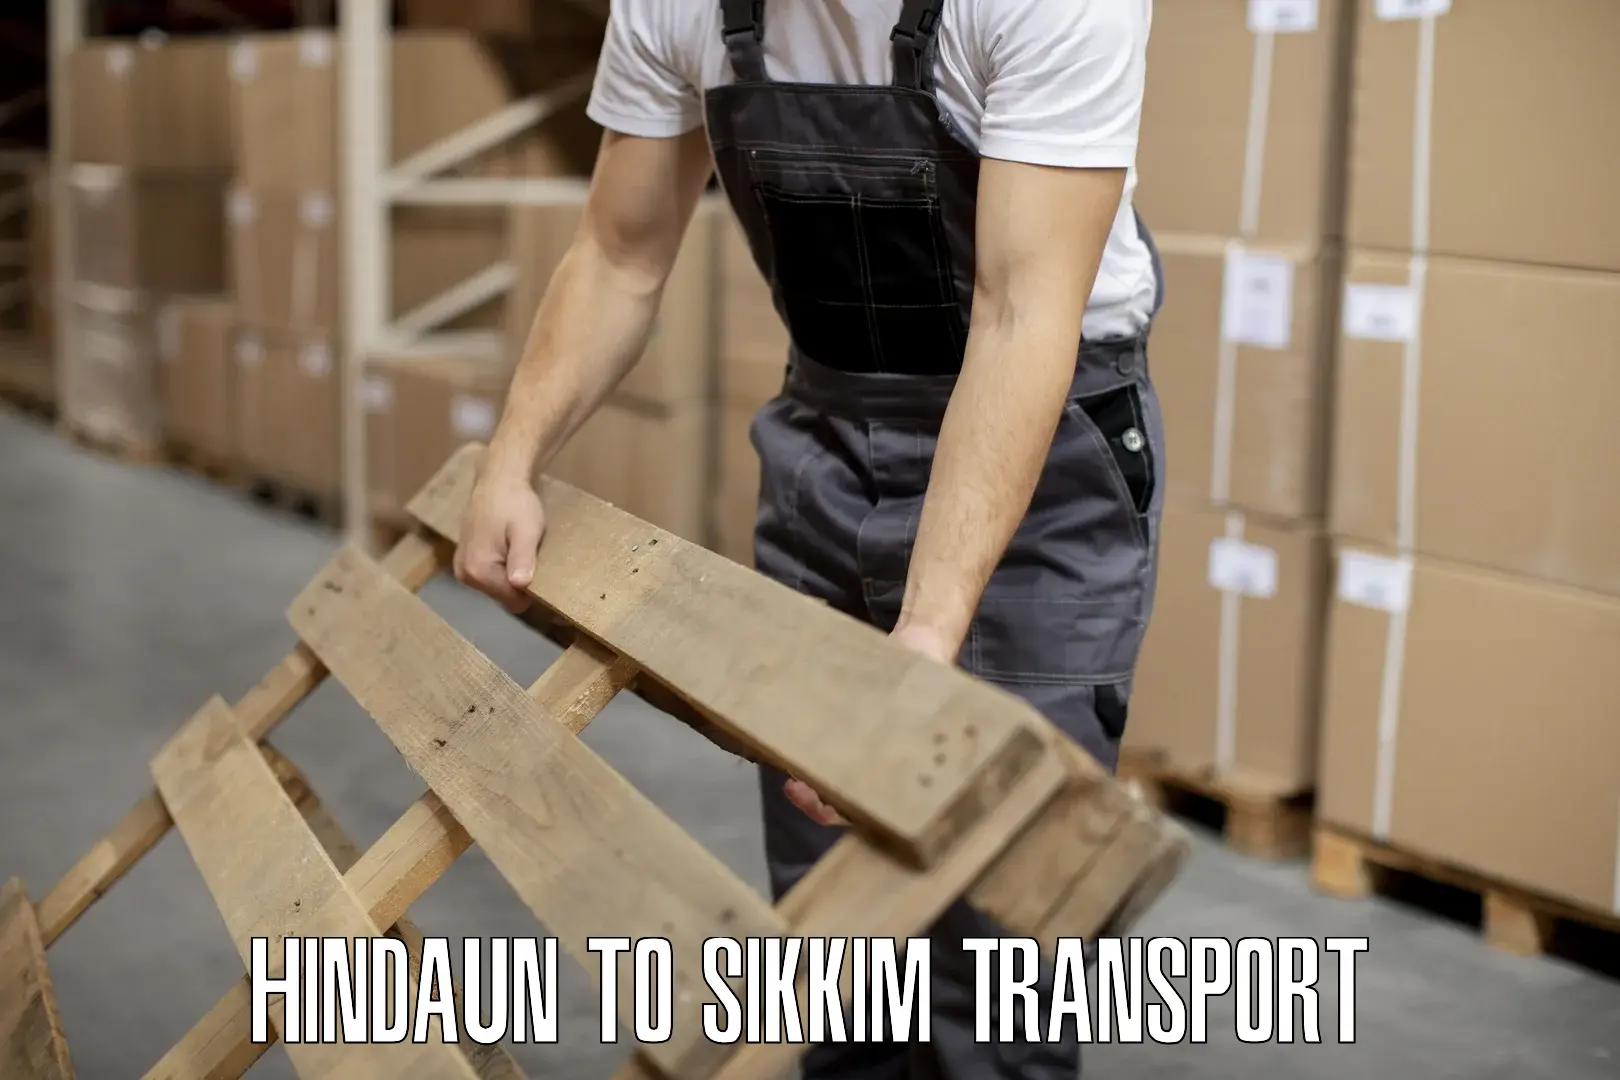 Interstate transport services Hindaun to Mangan